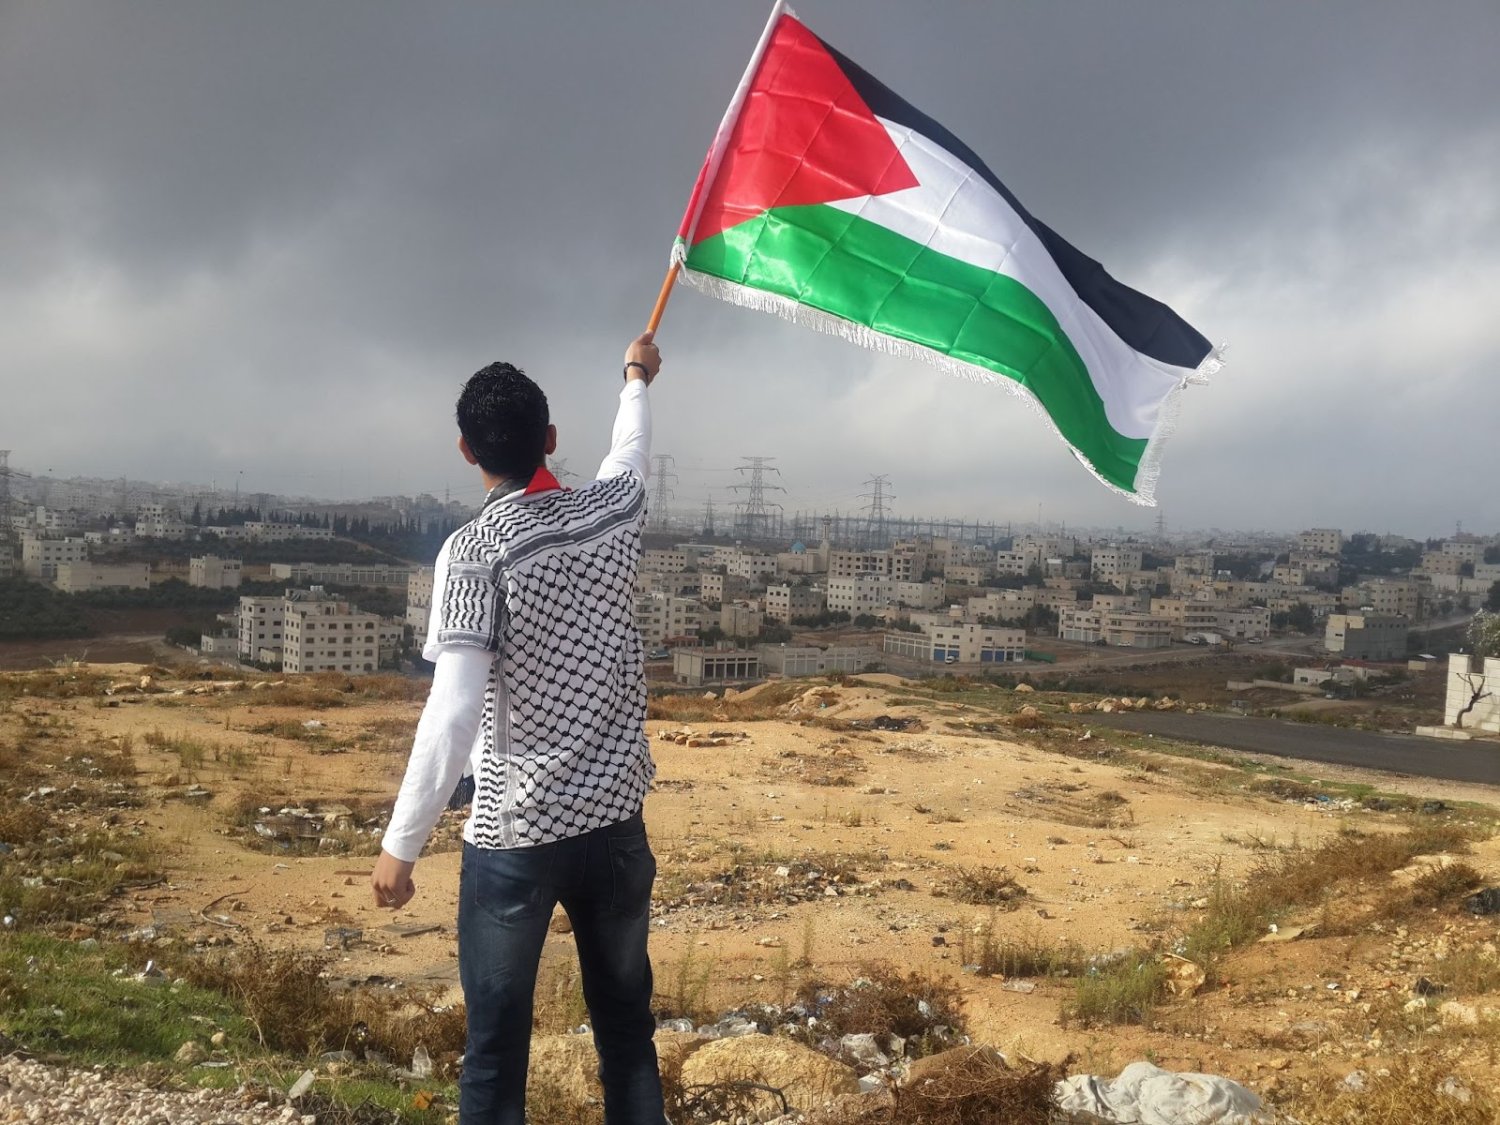 États arabes : entre rhétorique pro-palestinienne et compromission avec Israël